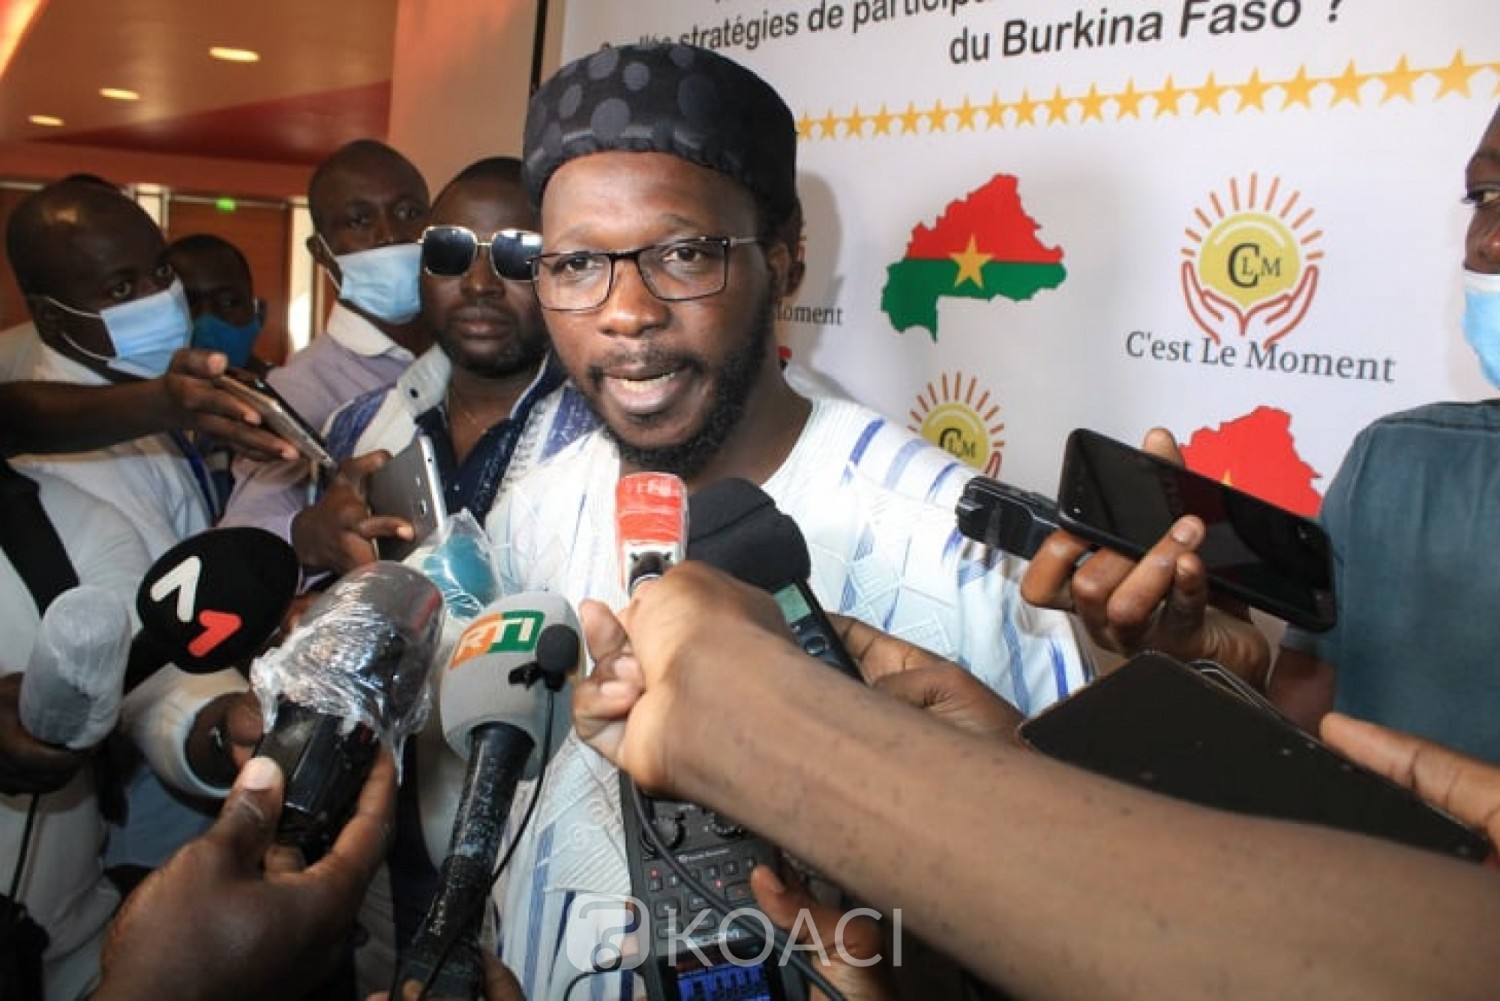 Côte d'Ivoire - Burkina Faso : A quelques mois de la présidentielle au Burkina, la diaspora opte pour le président sortant et annonce sa victoire au 1er tour